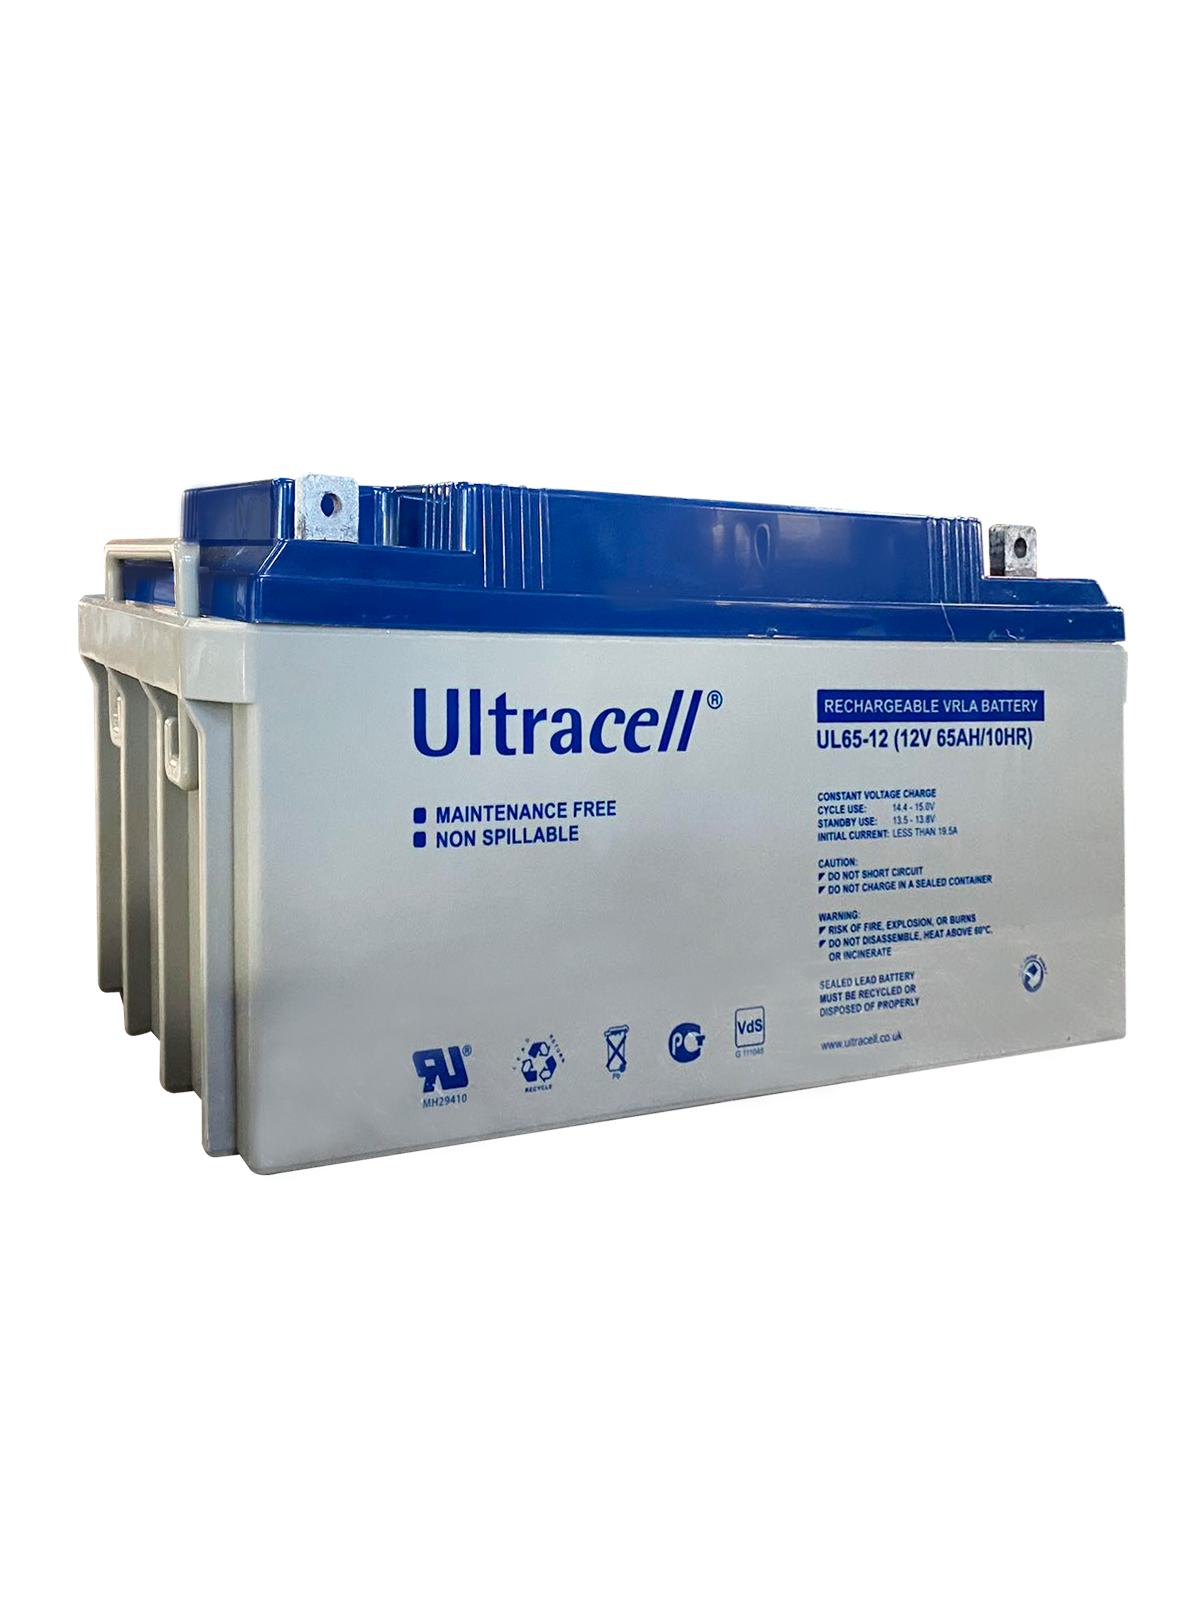 GEL Ultracell 12V 65Ah battery